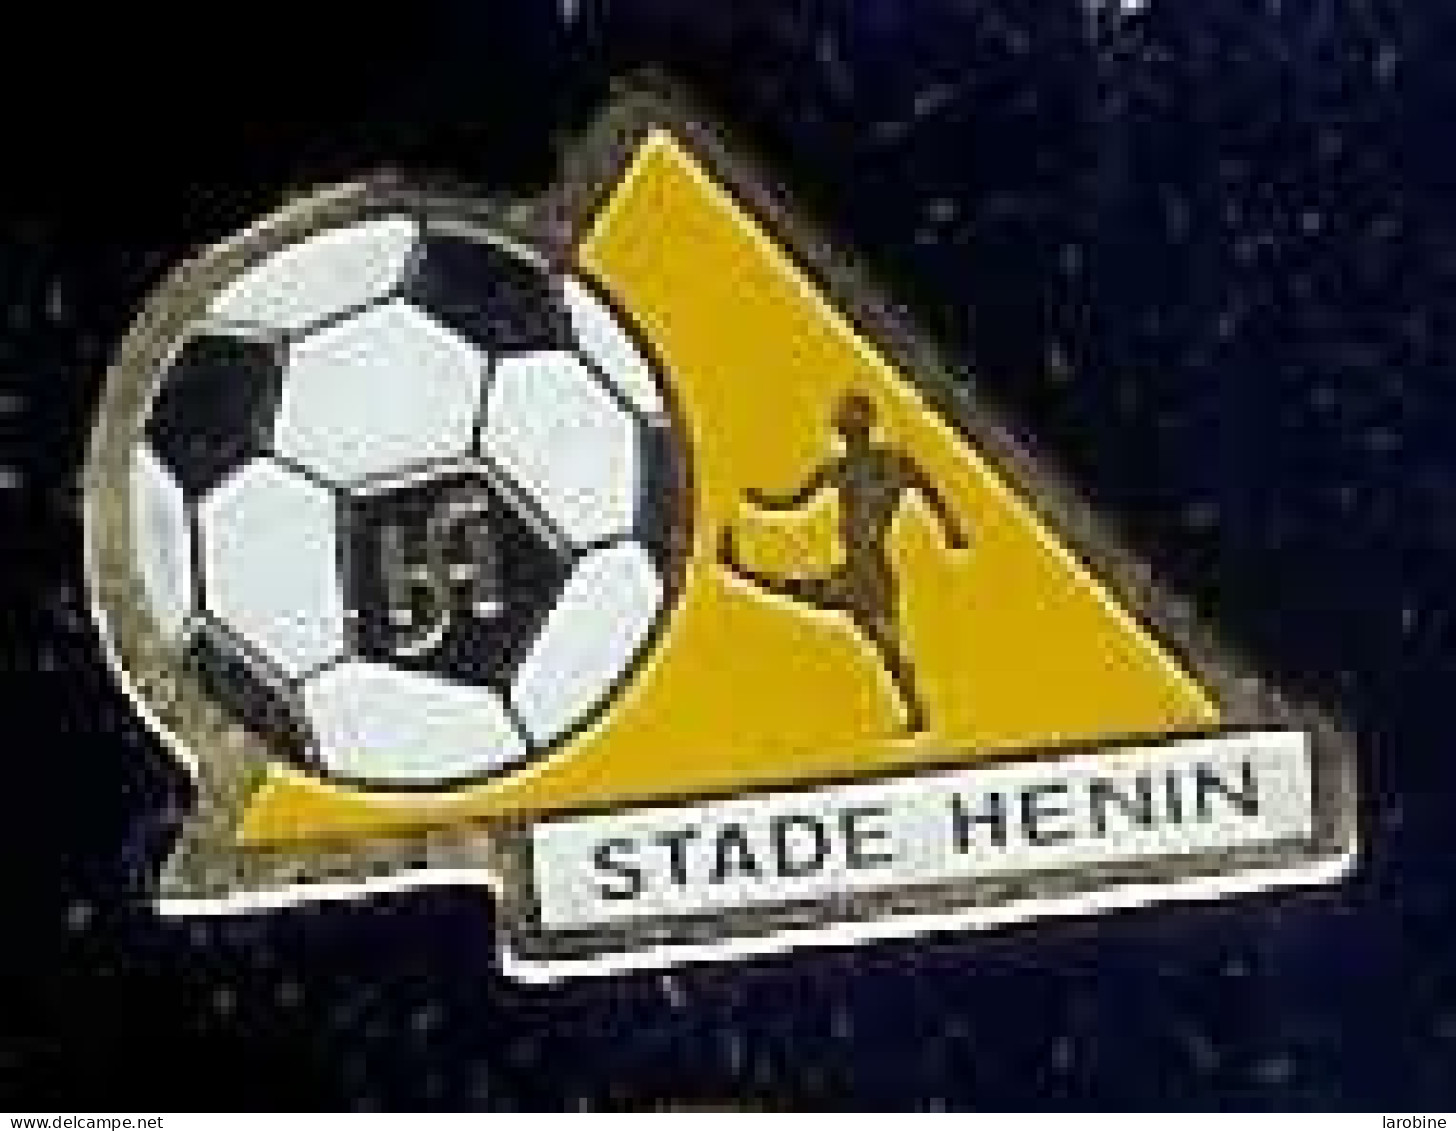 @@ Football Club STADE HENIN @@sp107 - Football